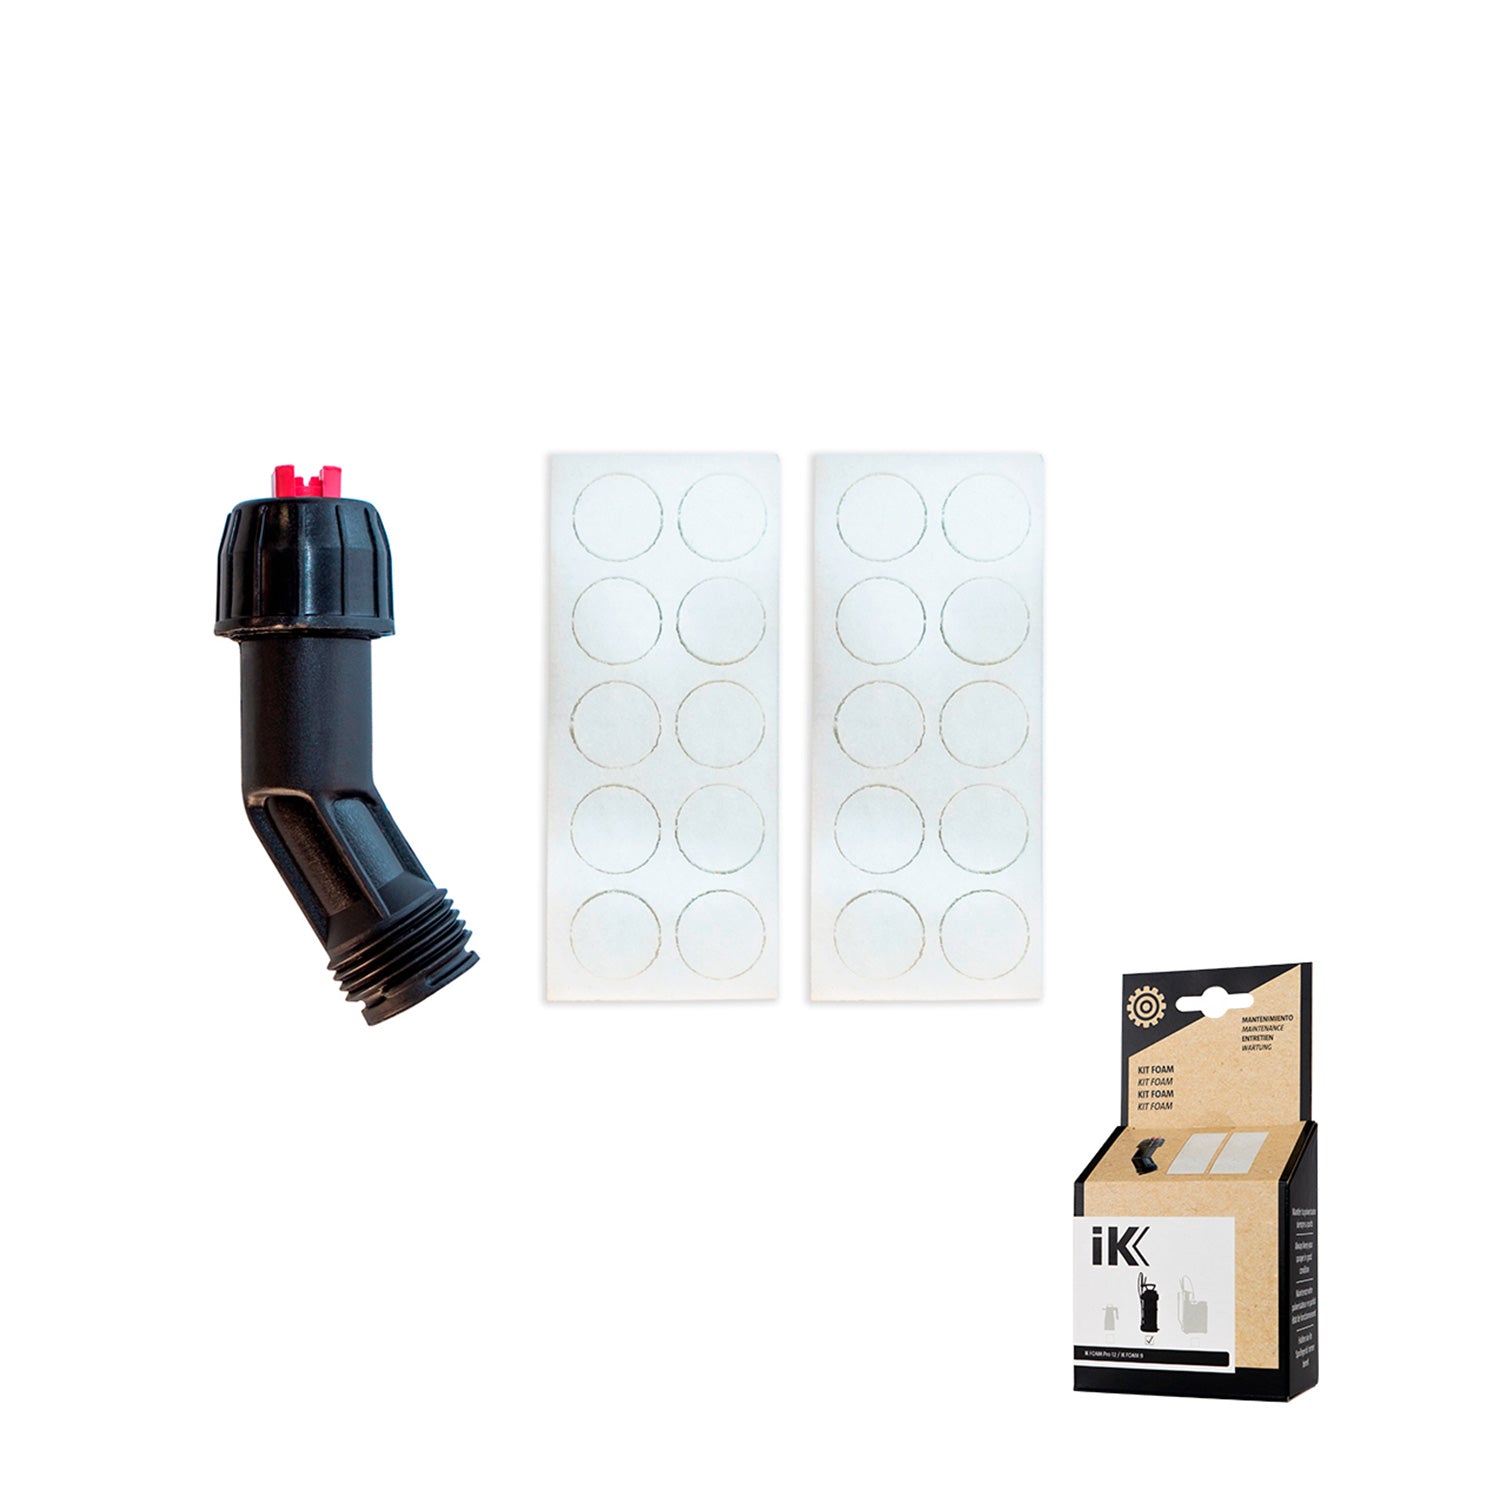 ik-foam-pro-12-replacement-nozzle-kit